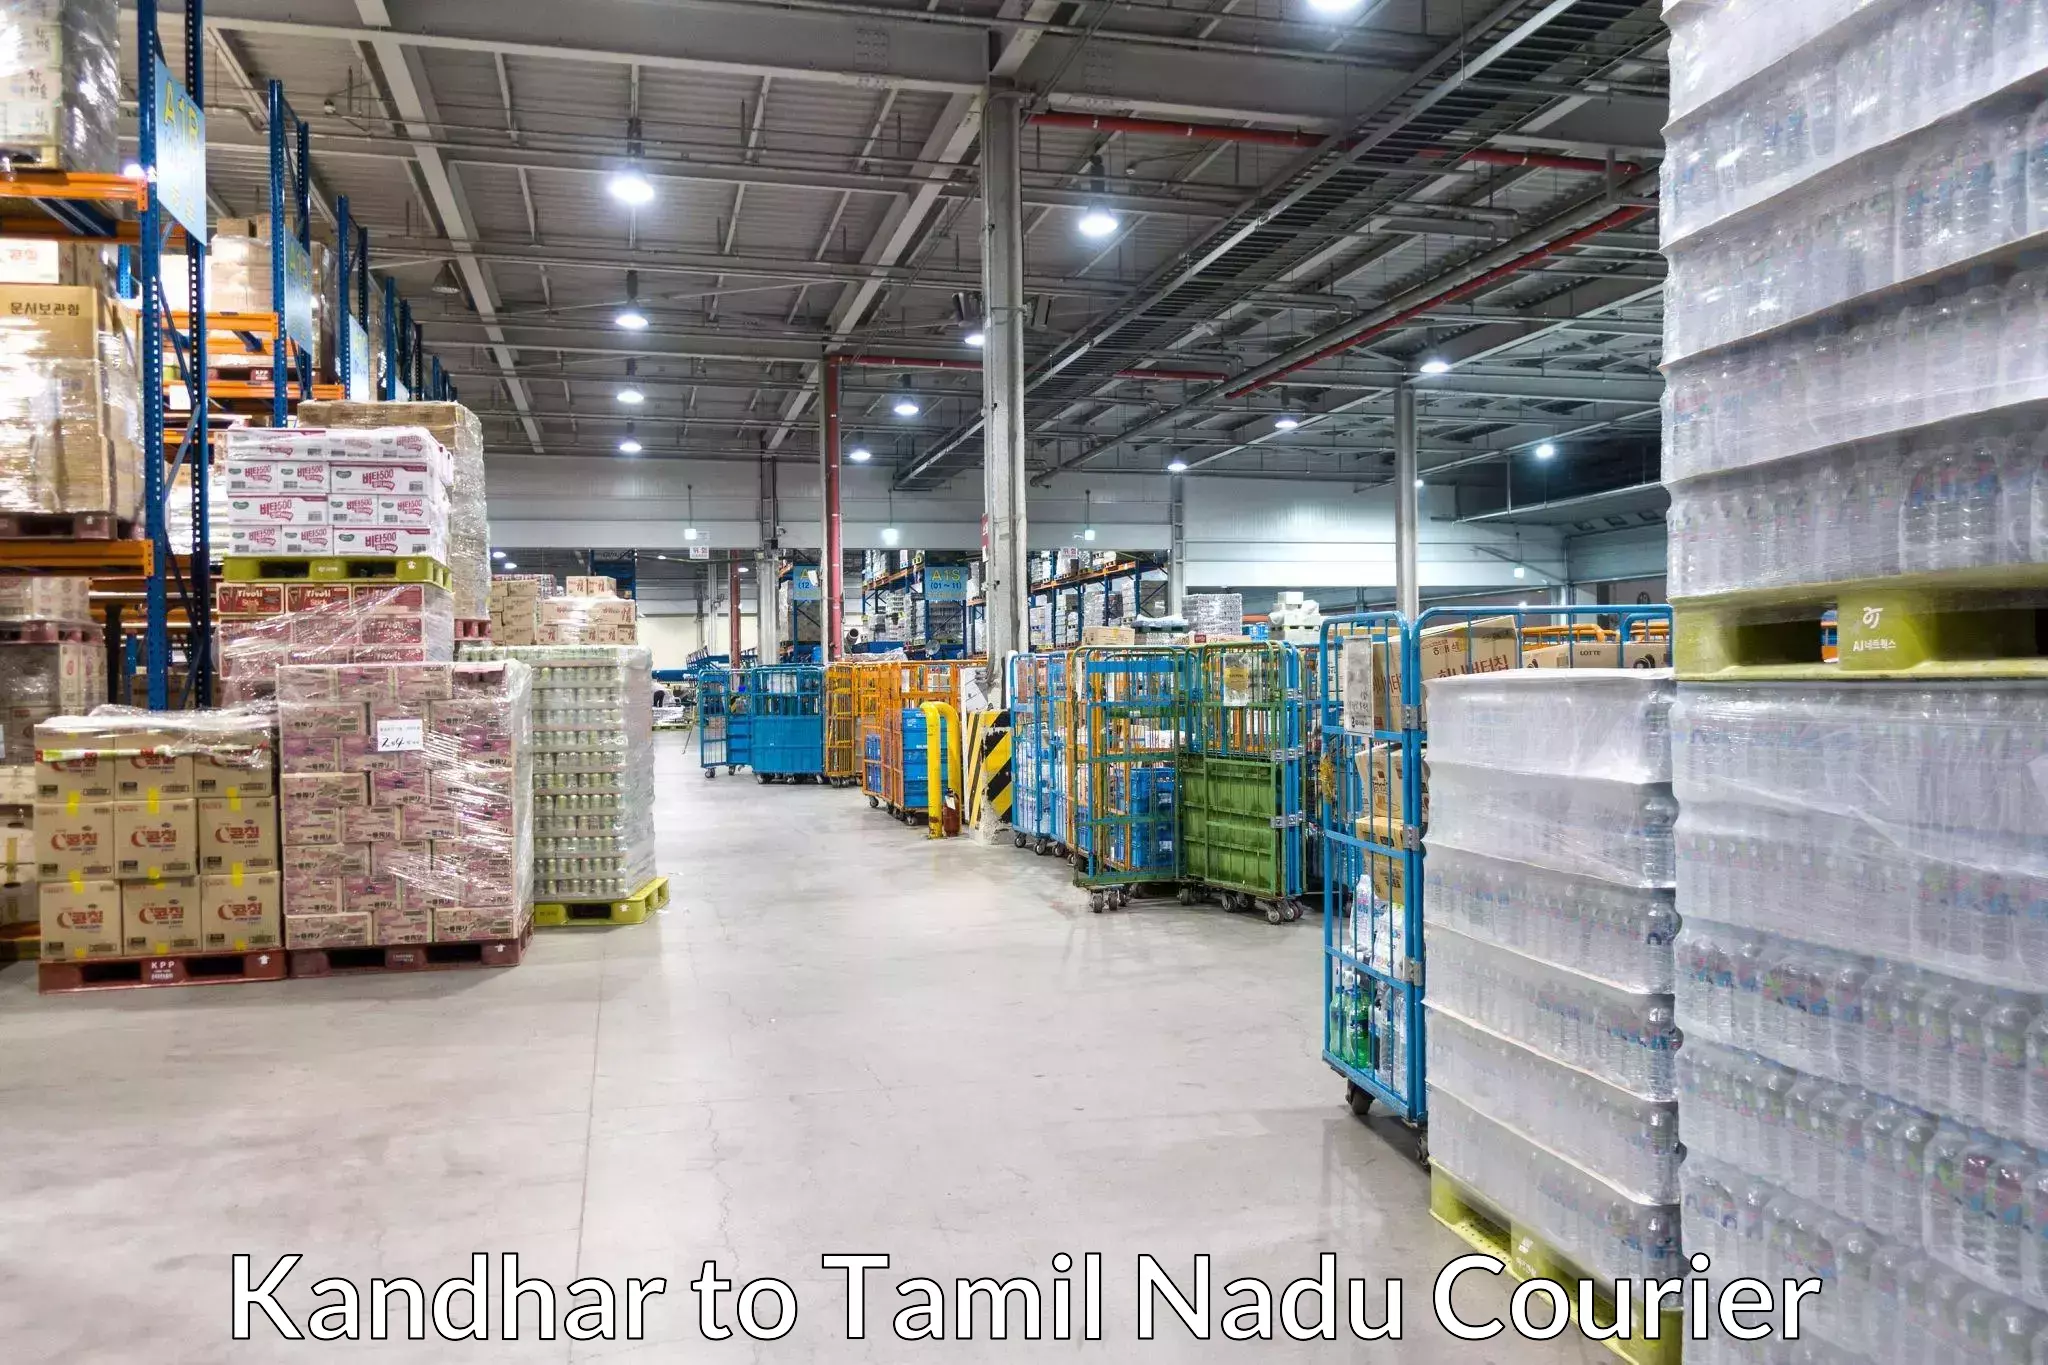 Cash on delivery service Kandhar to Virudhunagar